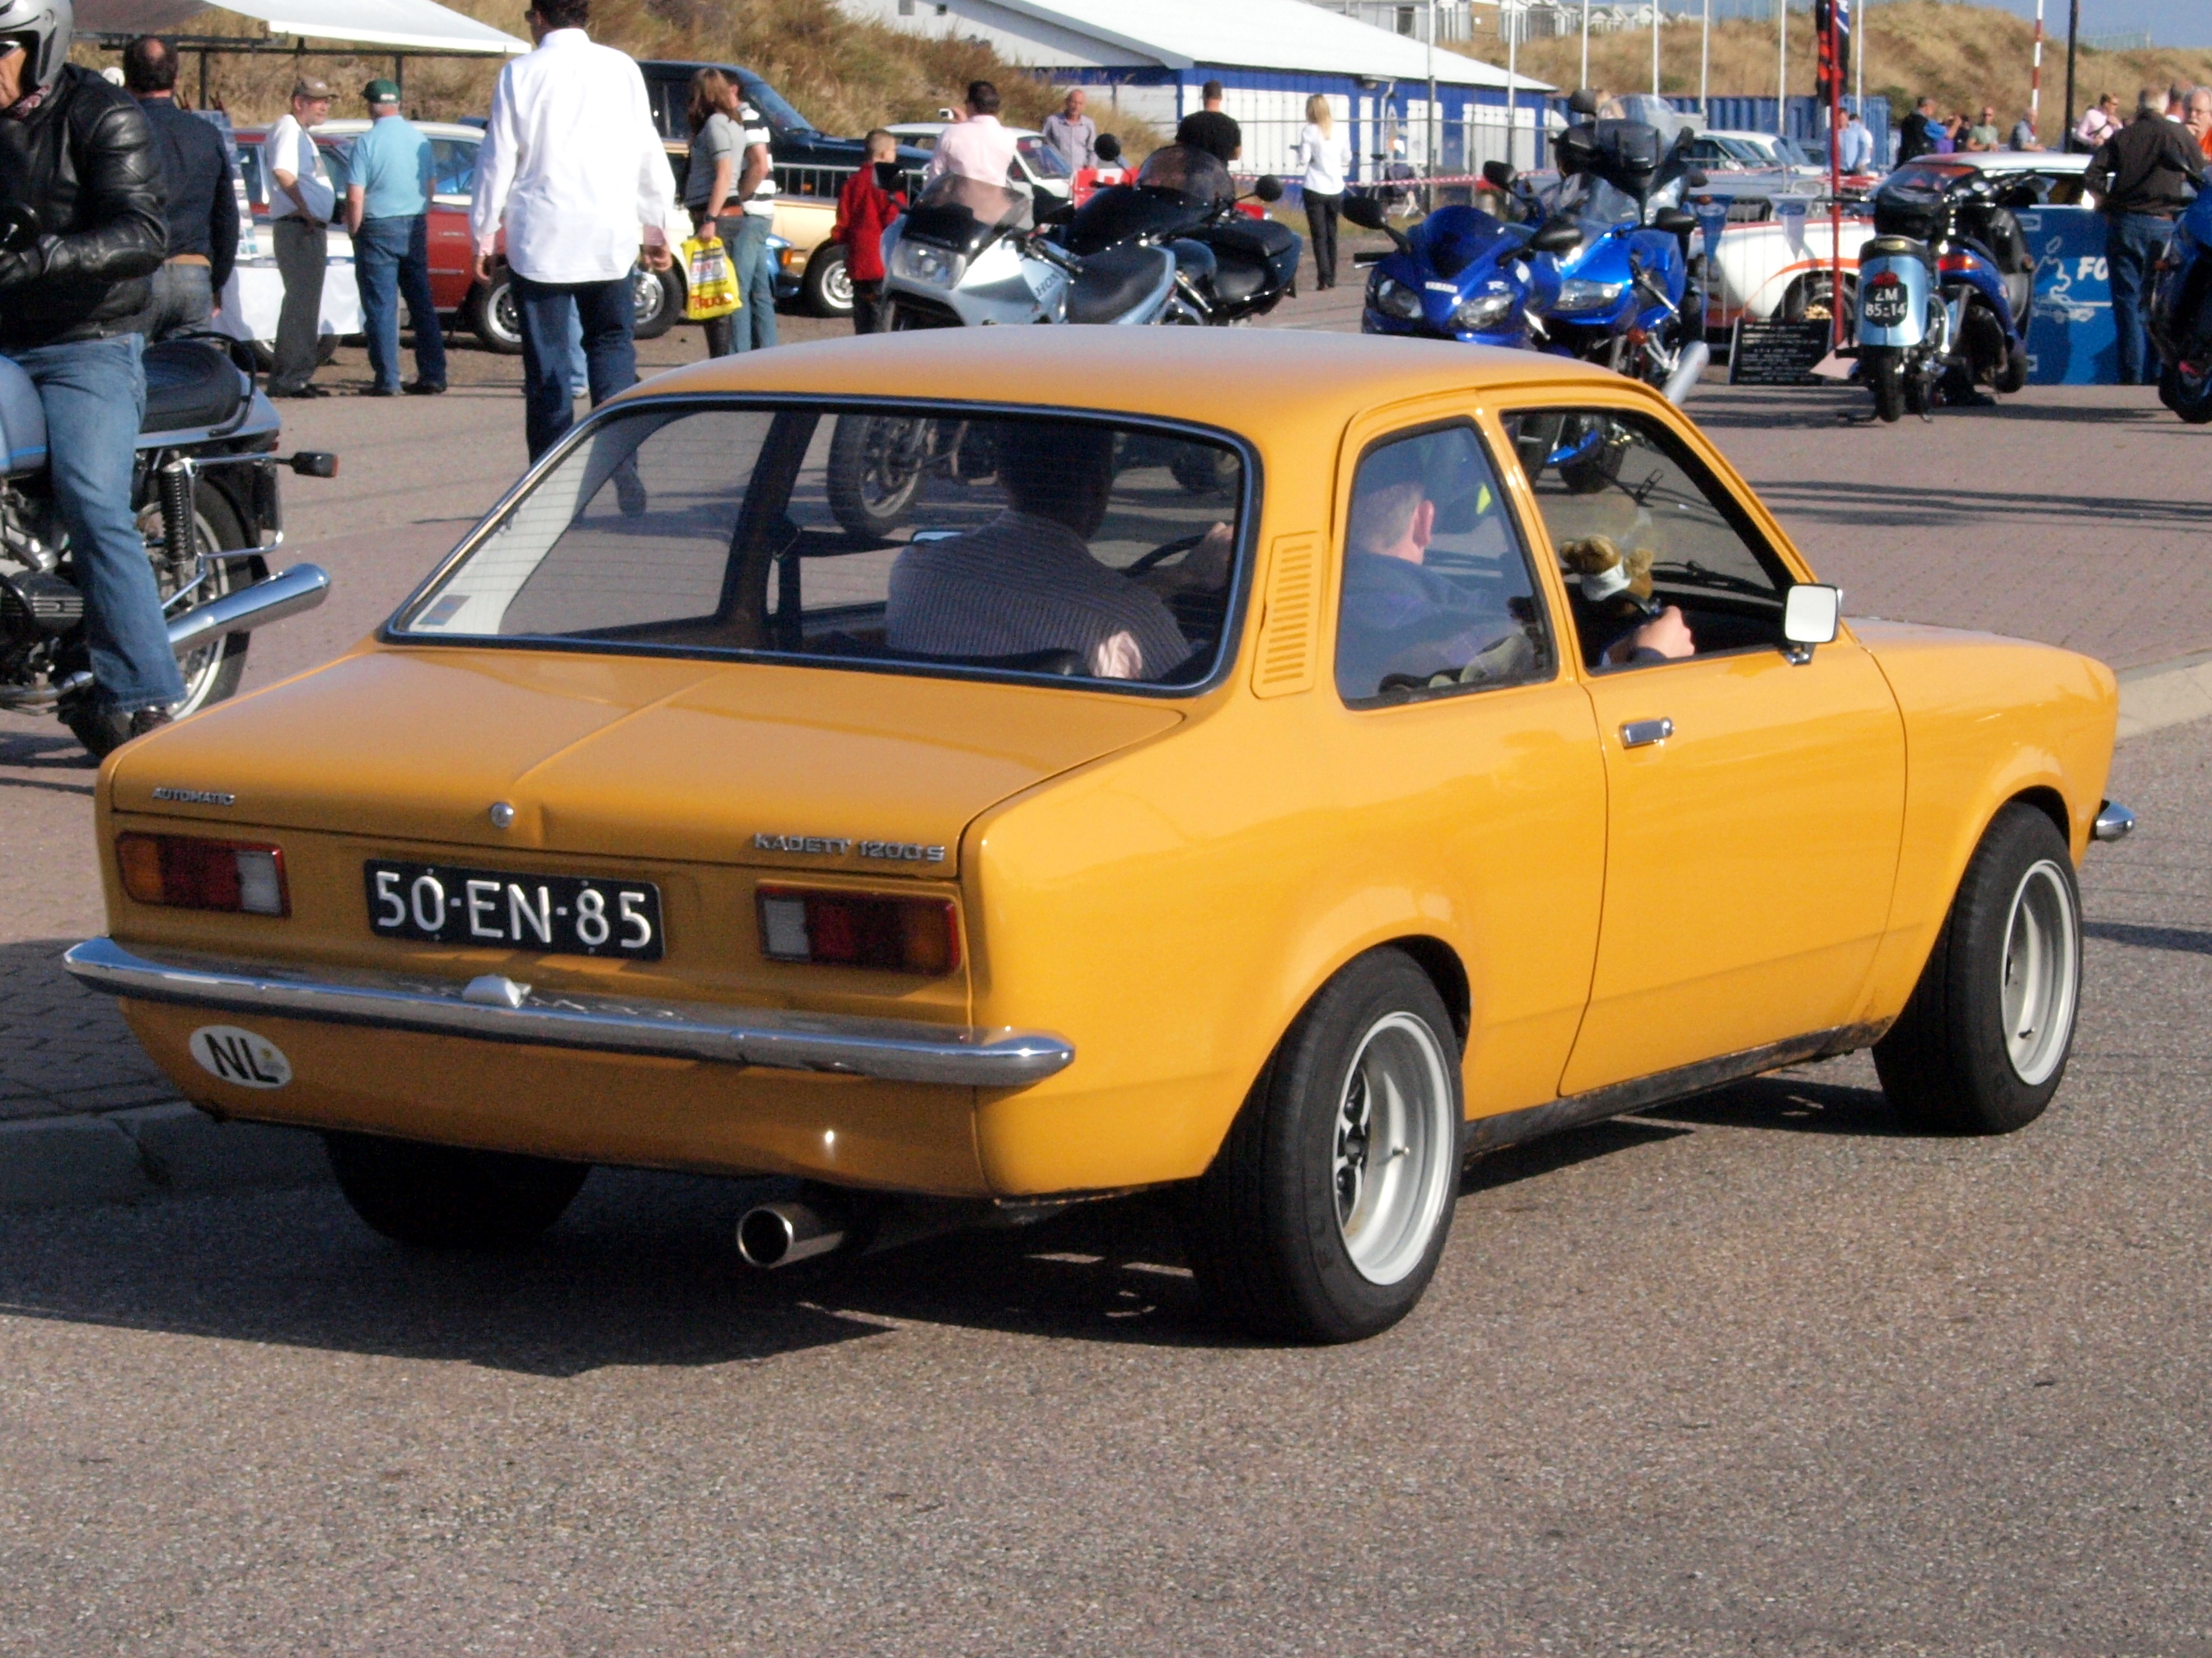 File:Opel KADETT AUTOMATIC dutch licence registration 50-EN-85 pic2.JPG